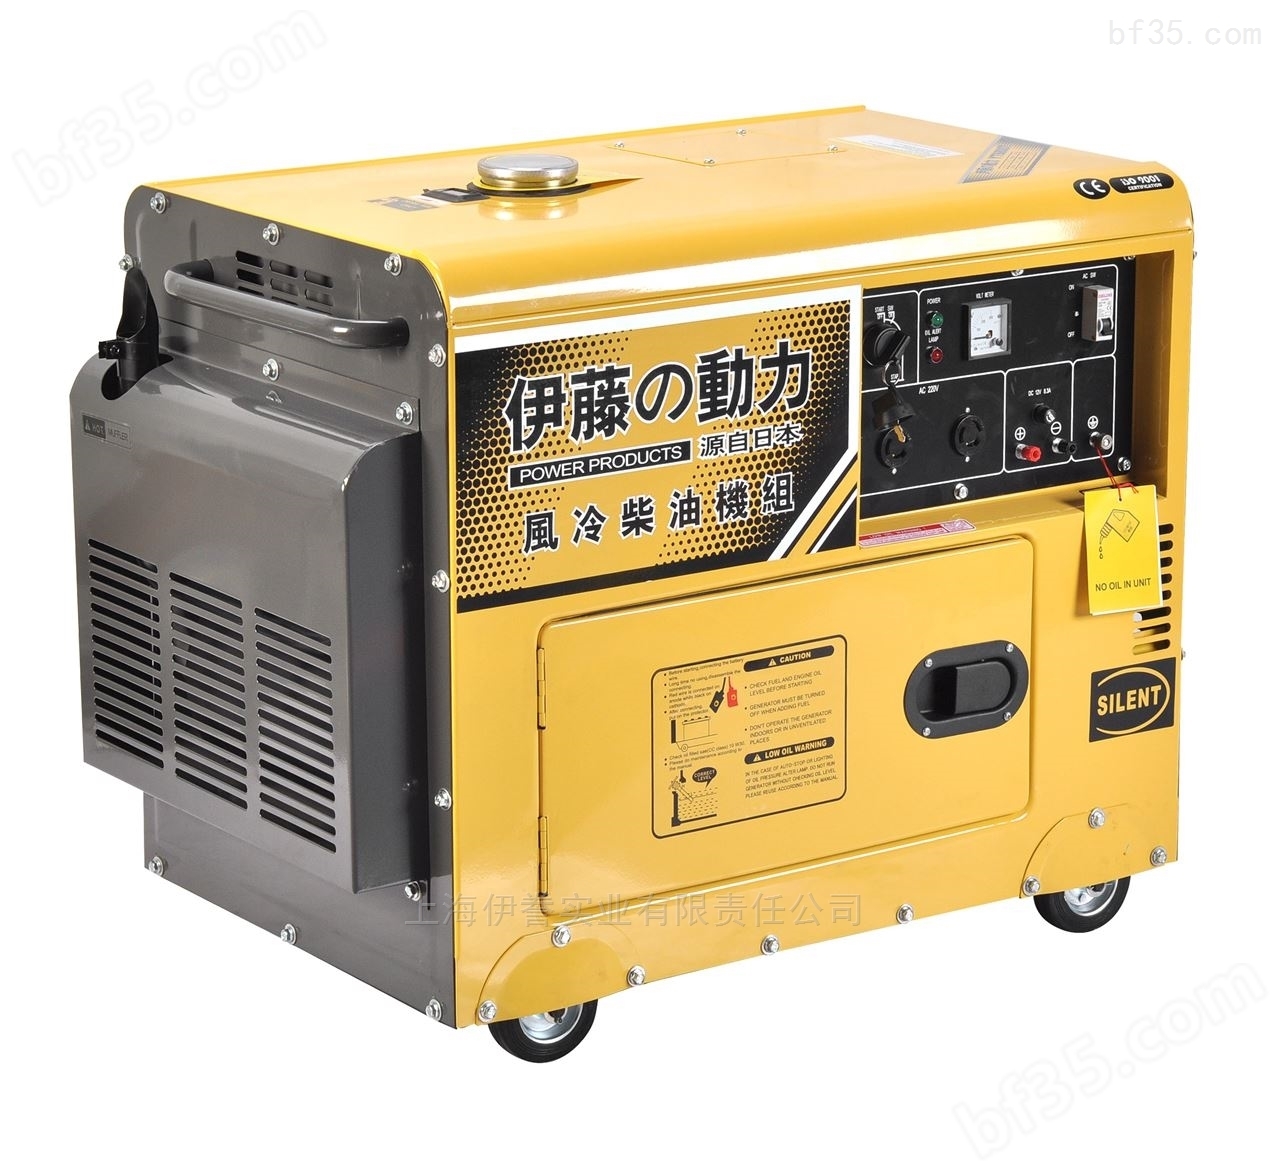 伊藤YT6800T*柴油发电机生产厂家